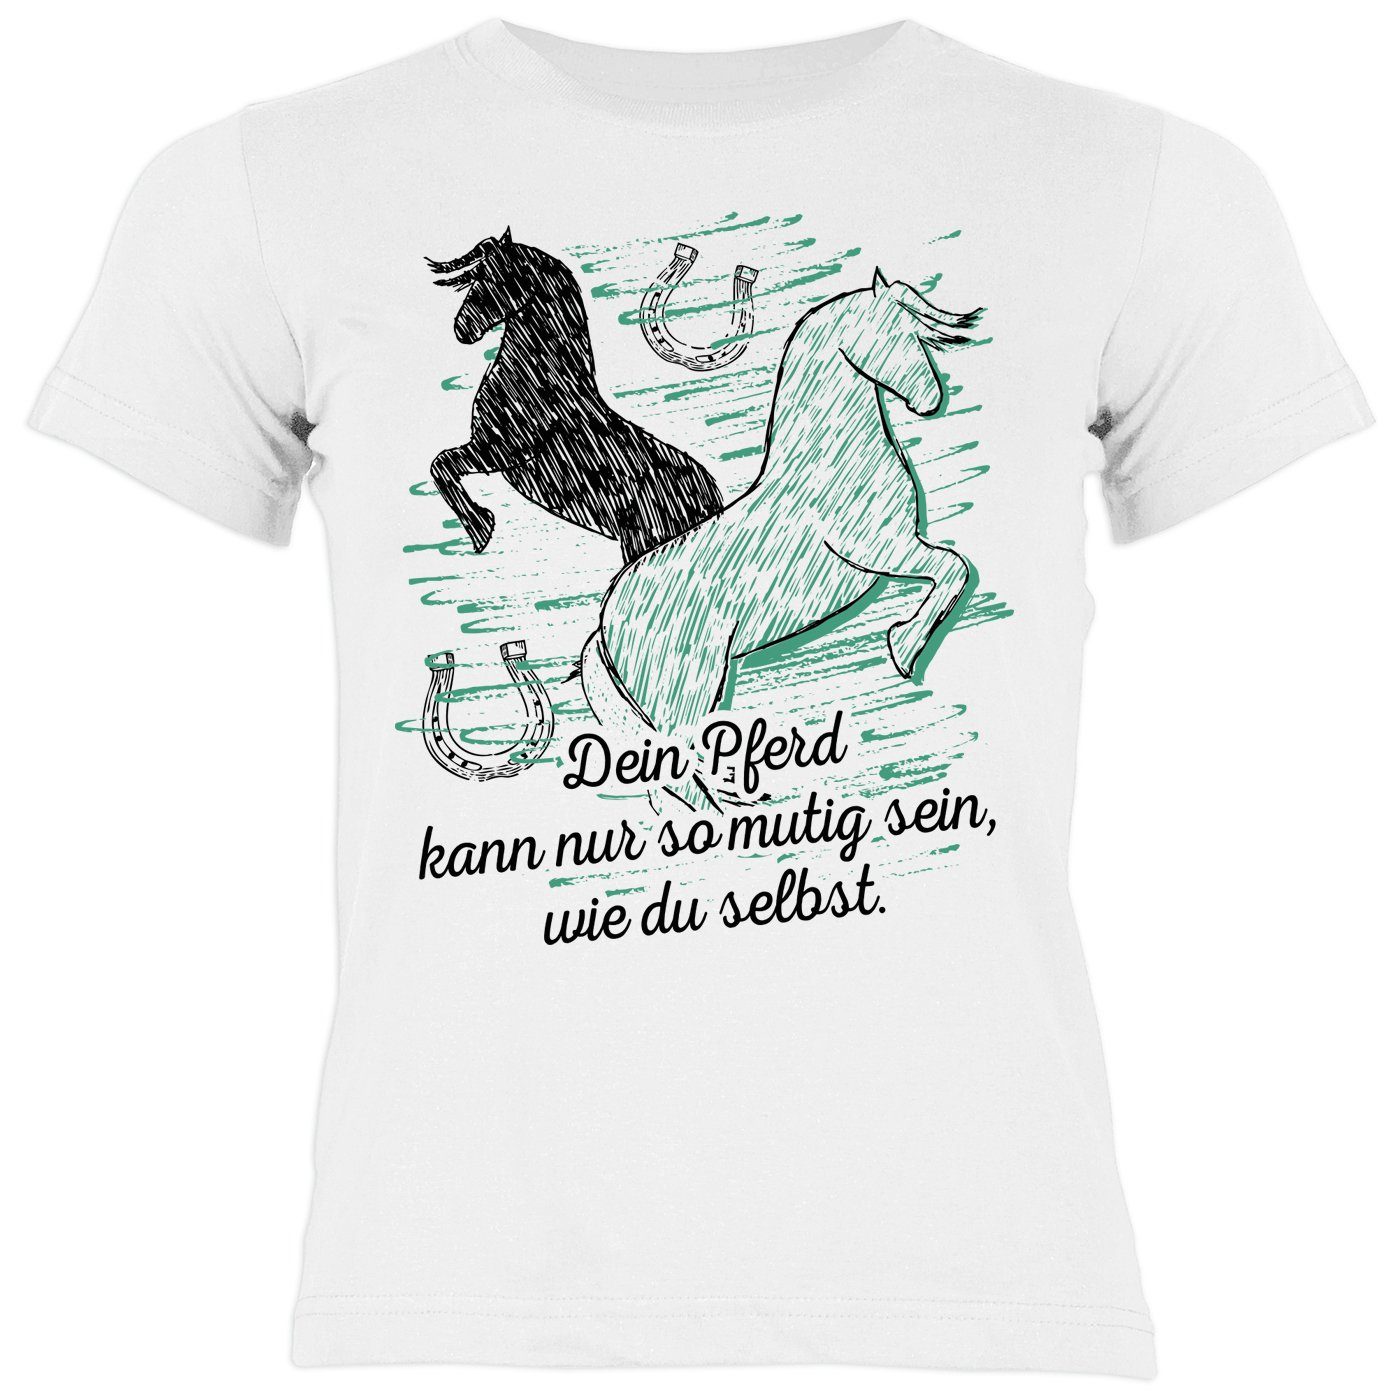 Tini - Shirts T-Shirt Kinder selbst Pferde so Pferd mutig Dein sein, Motiv wie kann du Shirt Sprüche Pferde Sprüche Shirt nur Kindershirt 